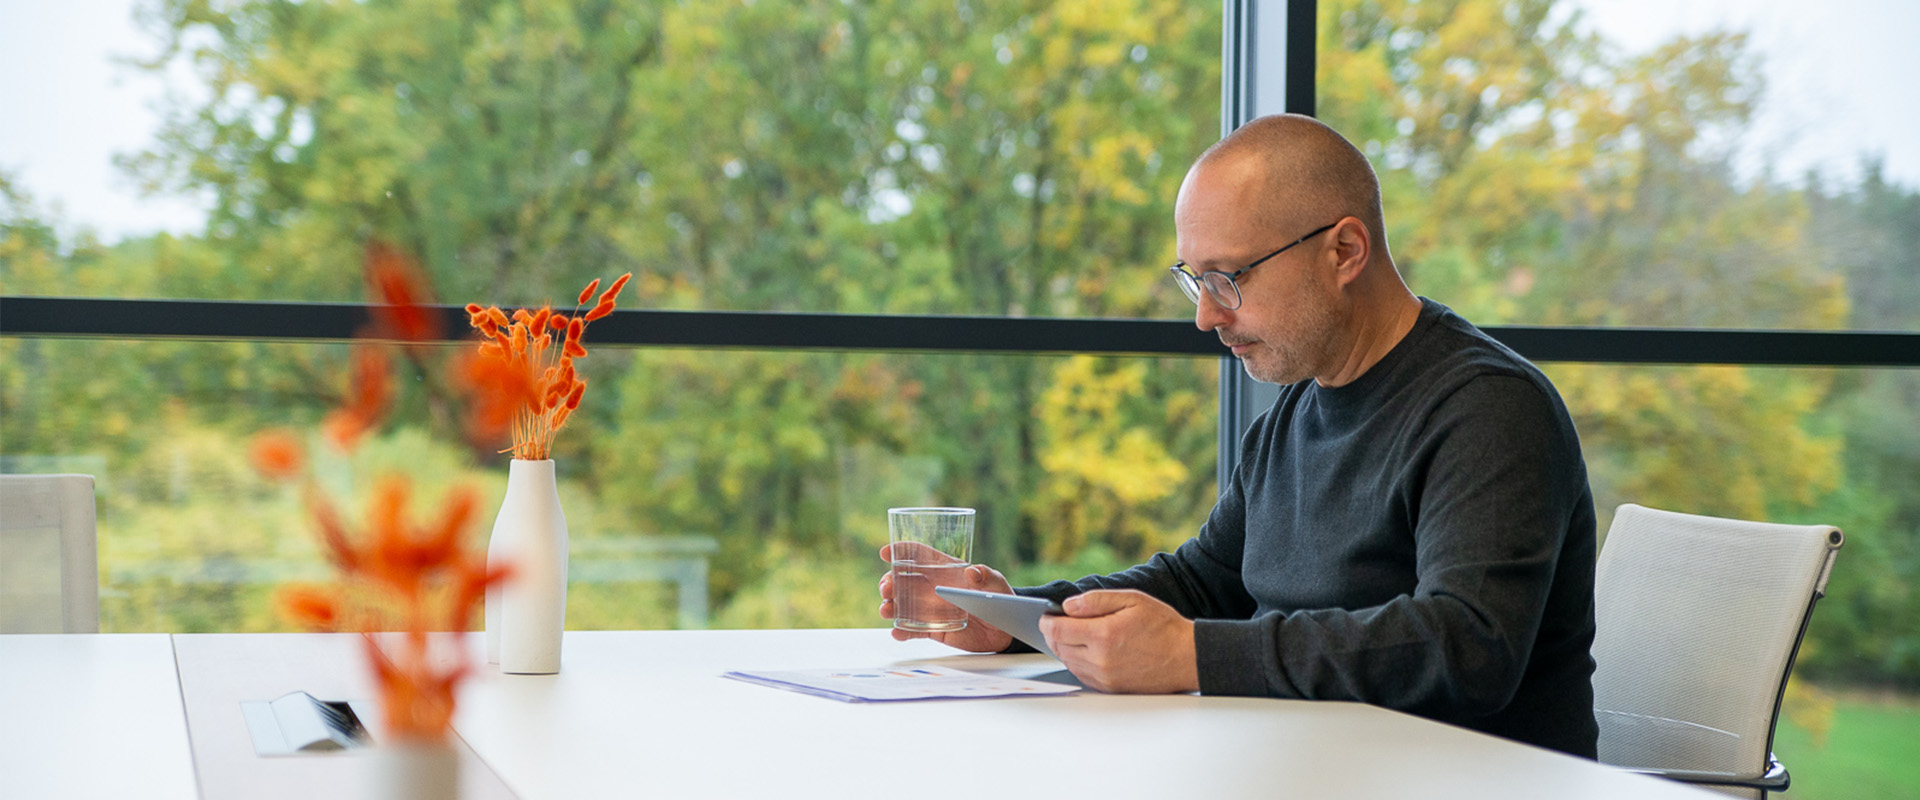 Holger Fuchs sitzt mit einem Ipad und einem Glas Wasser an einem Tisch vor einigen Dokumenten